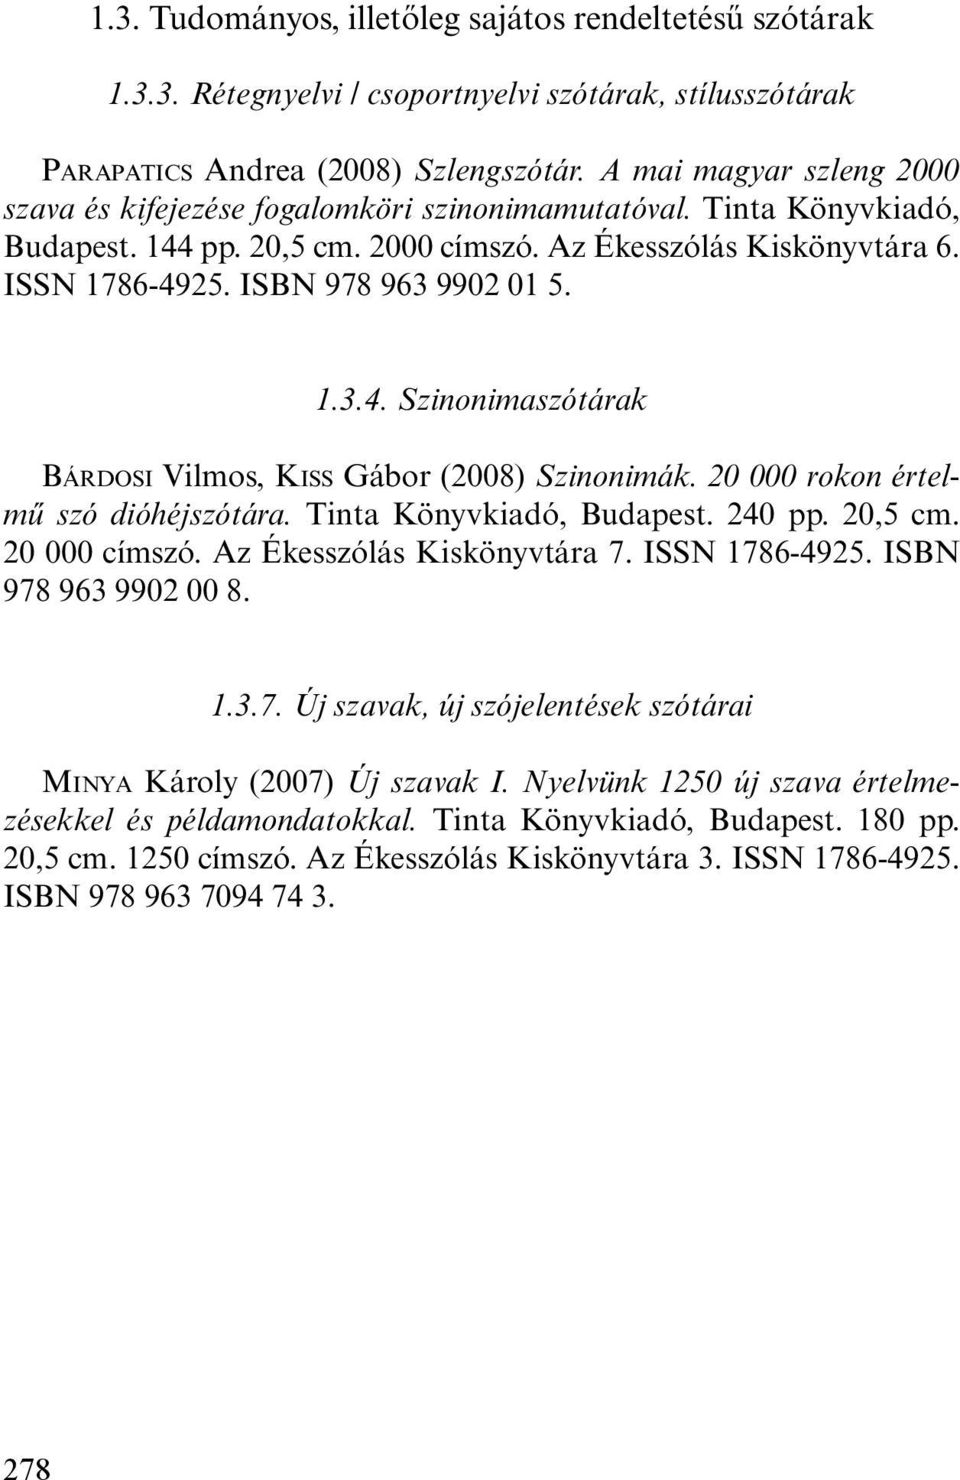 ISBN 978 963 9902 01 5. 1.3.4. Szinonimaszótárak BÁRDOSI Vilmos, KISS Gábor (2008) Szinonimák. 20 000 rokon értelmű szó dióhéjszótára. Tinta Könyvkiadó, Budapest. 240 pp. 20,5 cm. 20 000 címszó.